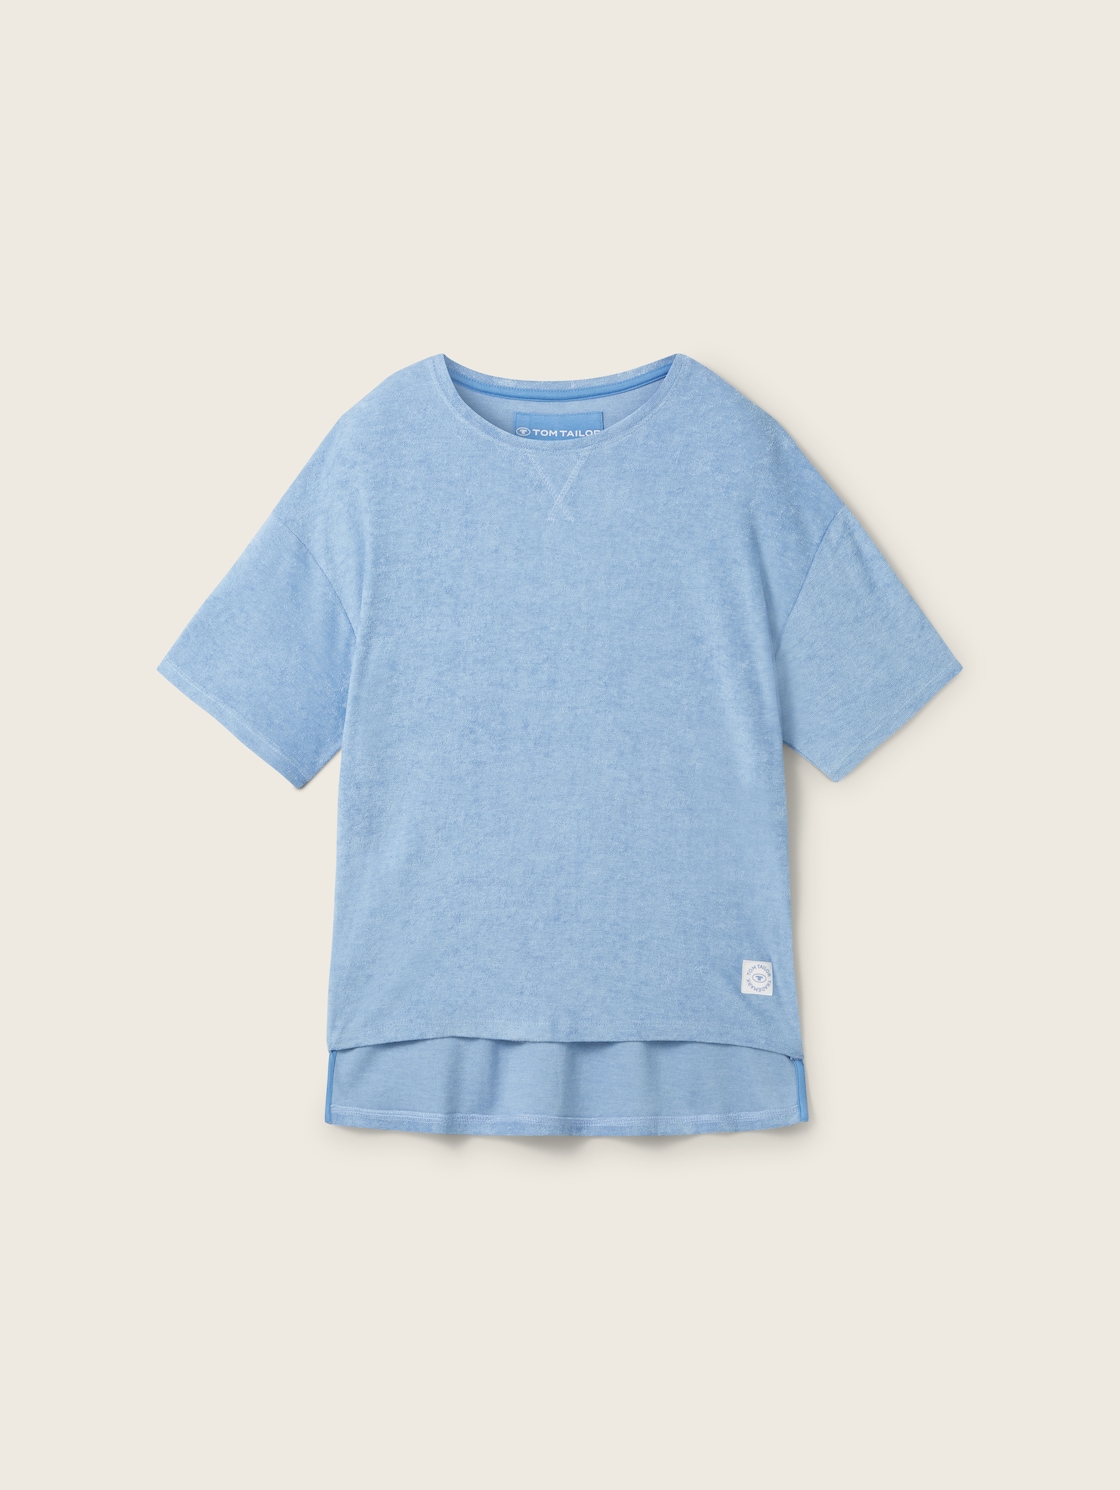 TOM TAILOR Damen T-Shirt mit Rundhalsausschnitt, blau, Uni, Gr. S/36 von Tom Tailor